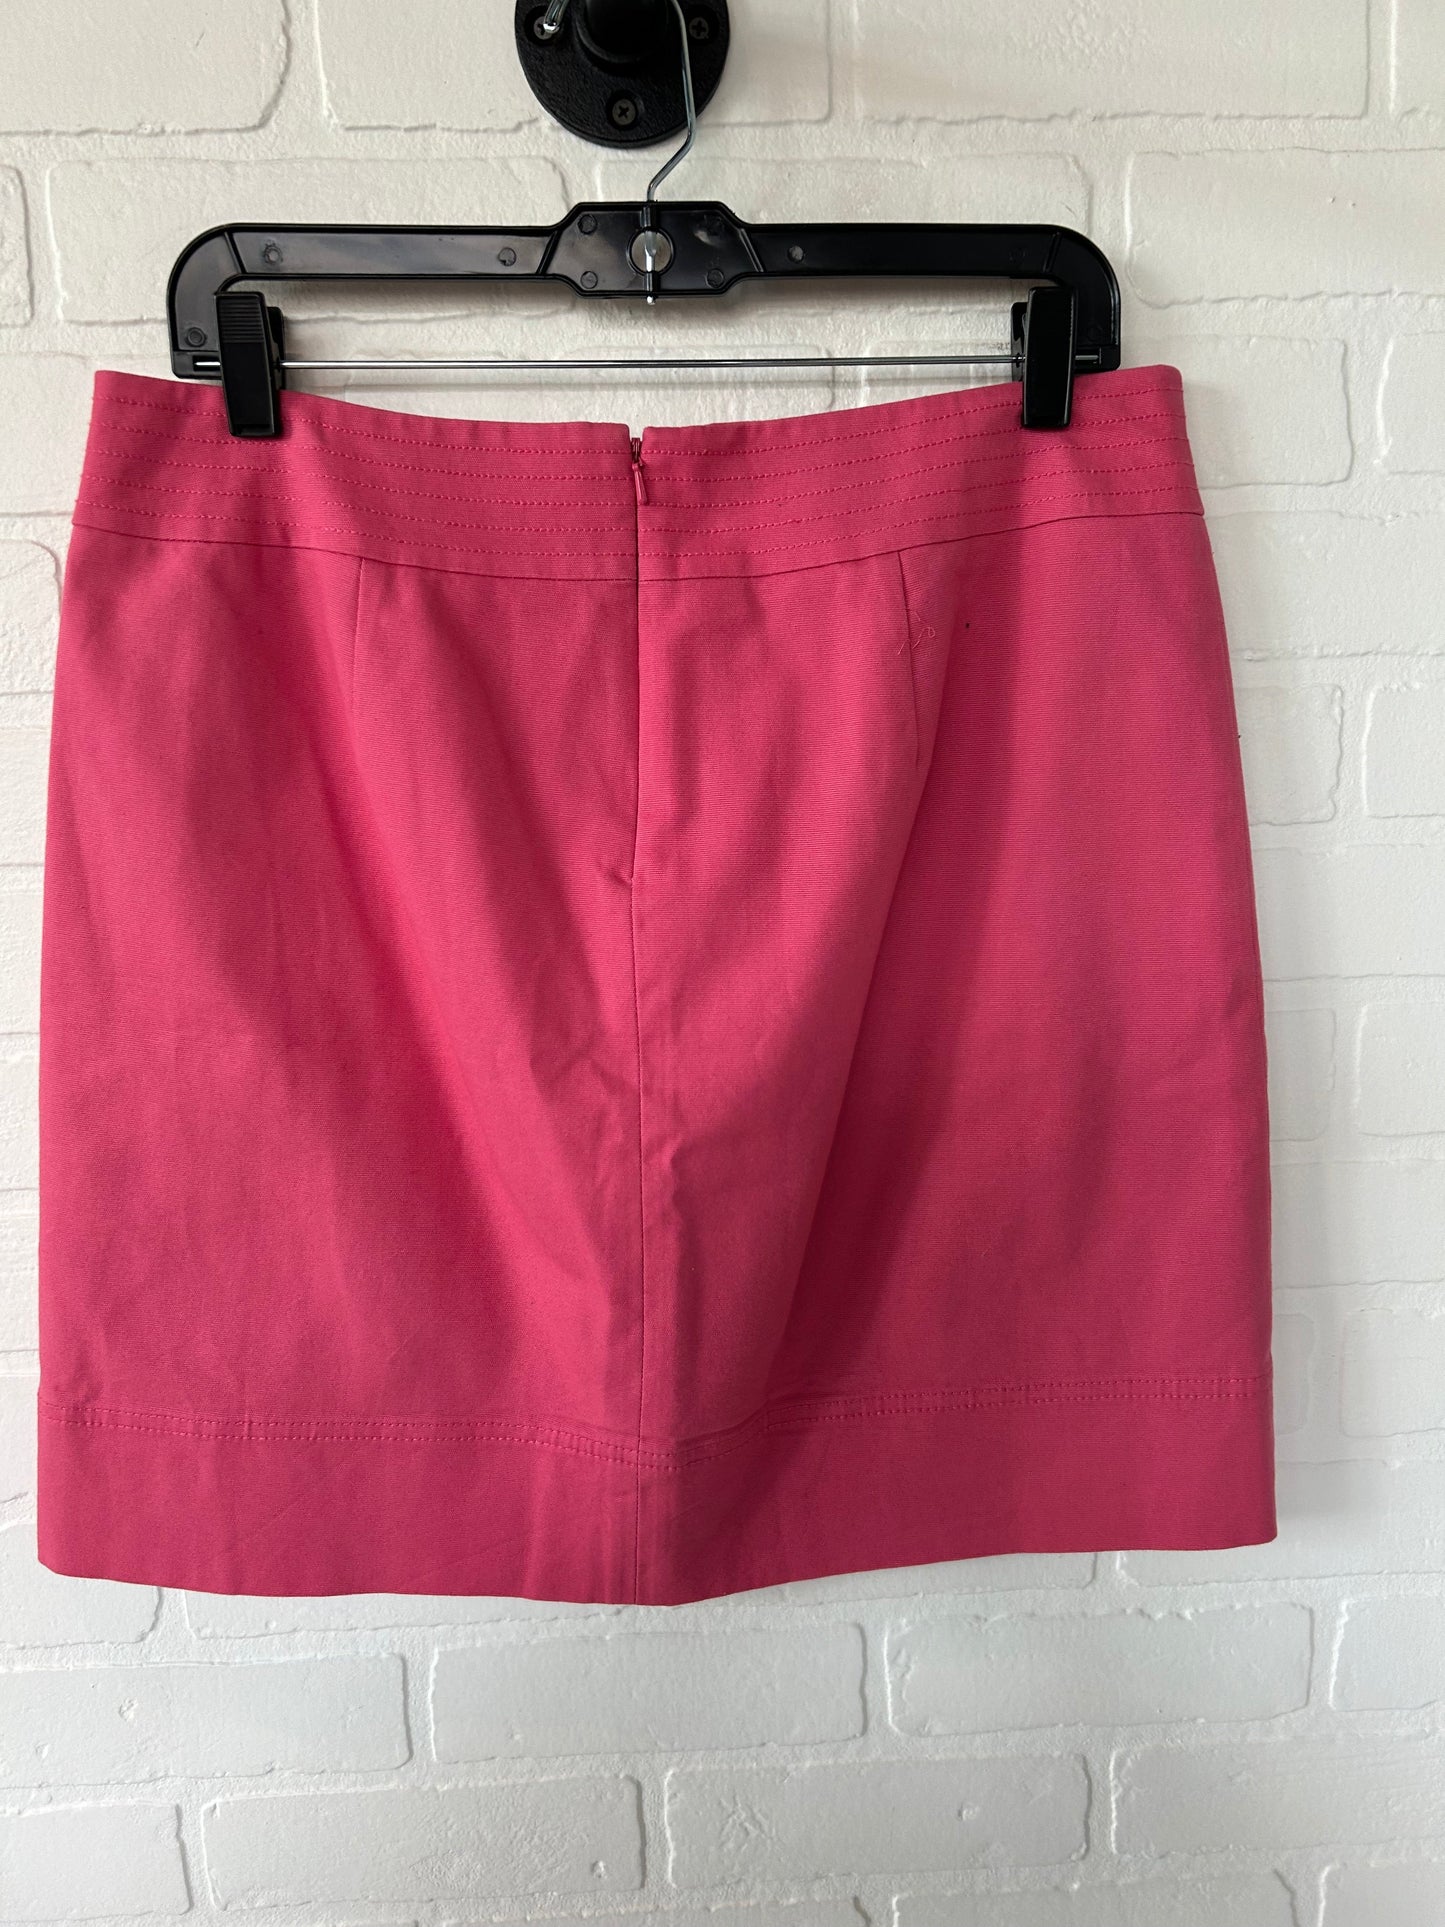 Pink Skirt Mini & Short Talbots, Size 10petite